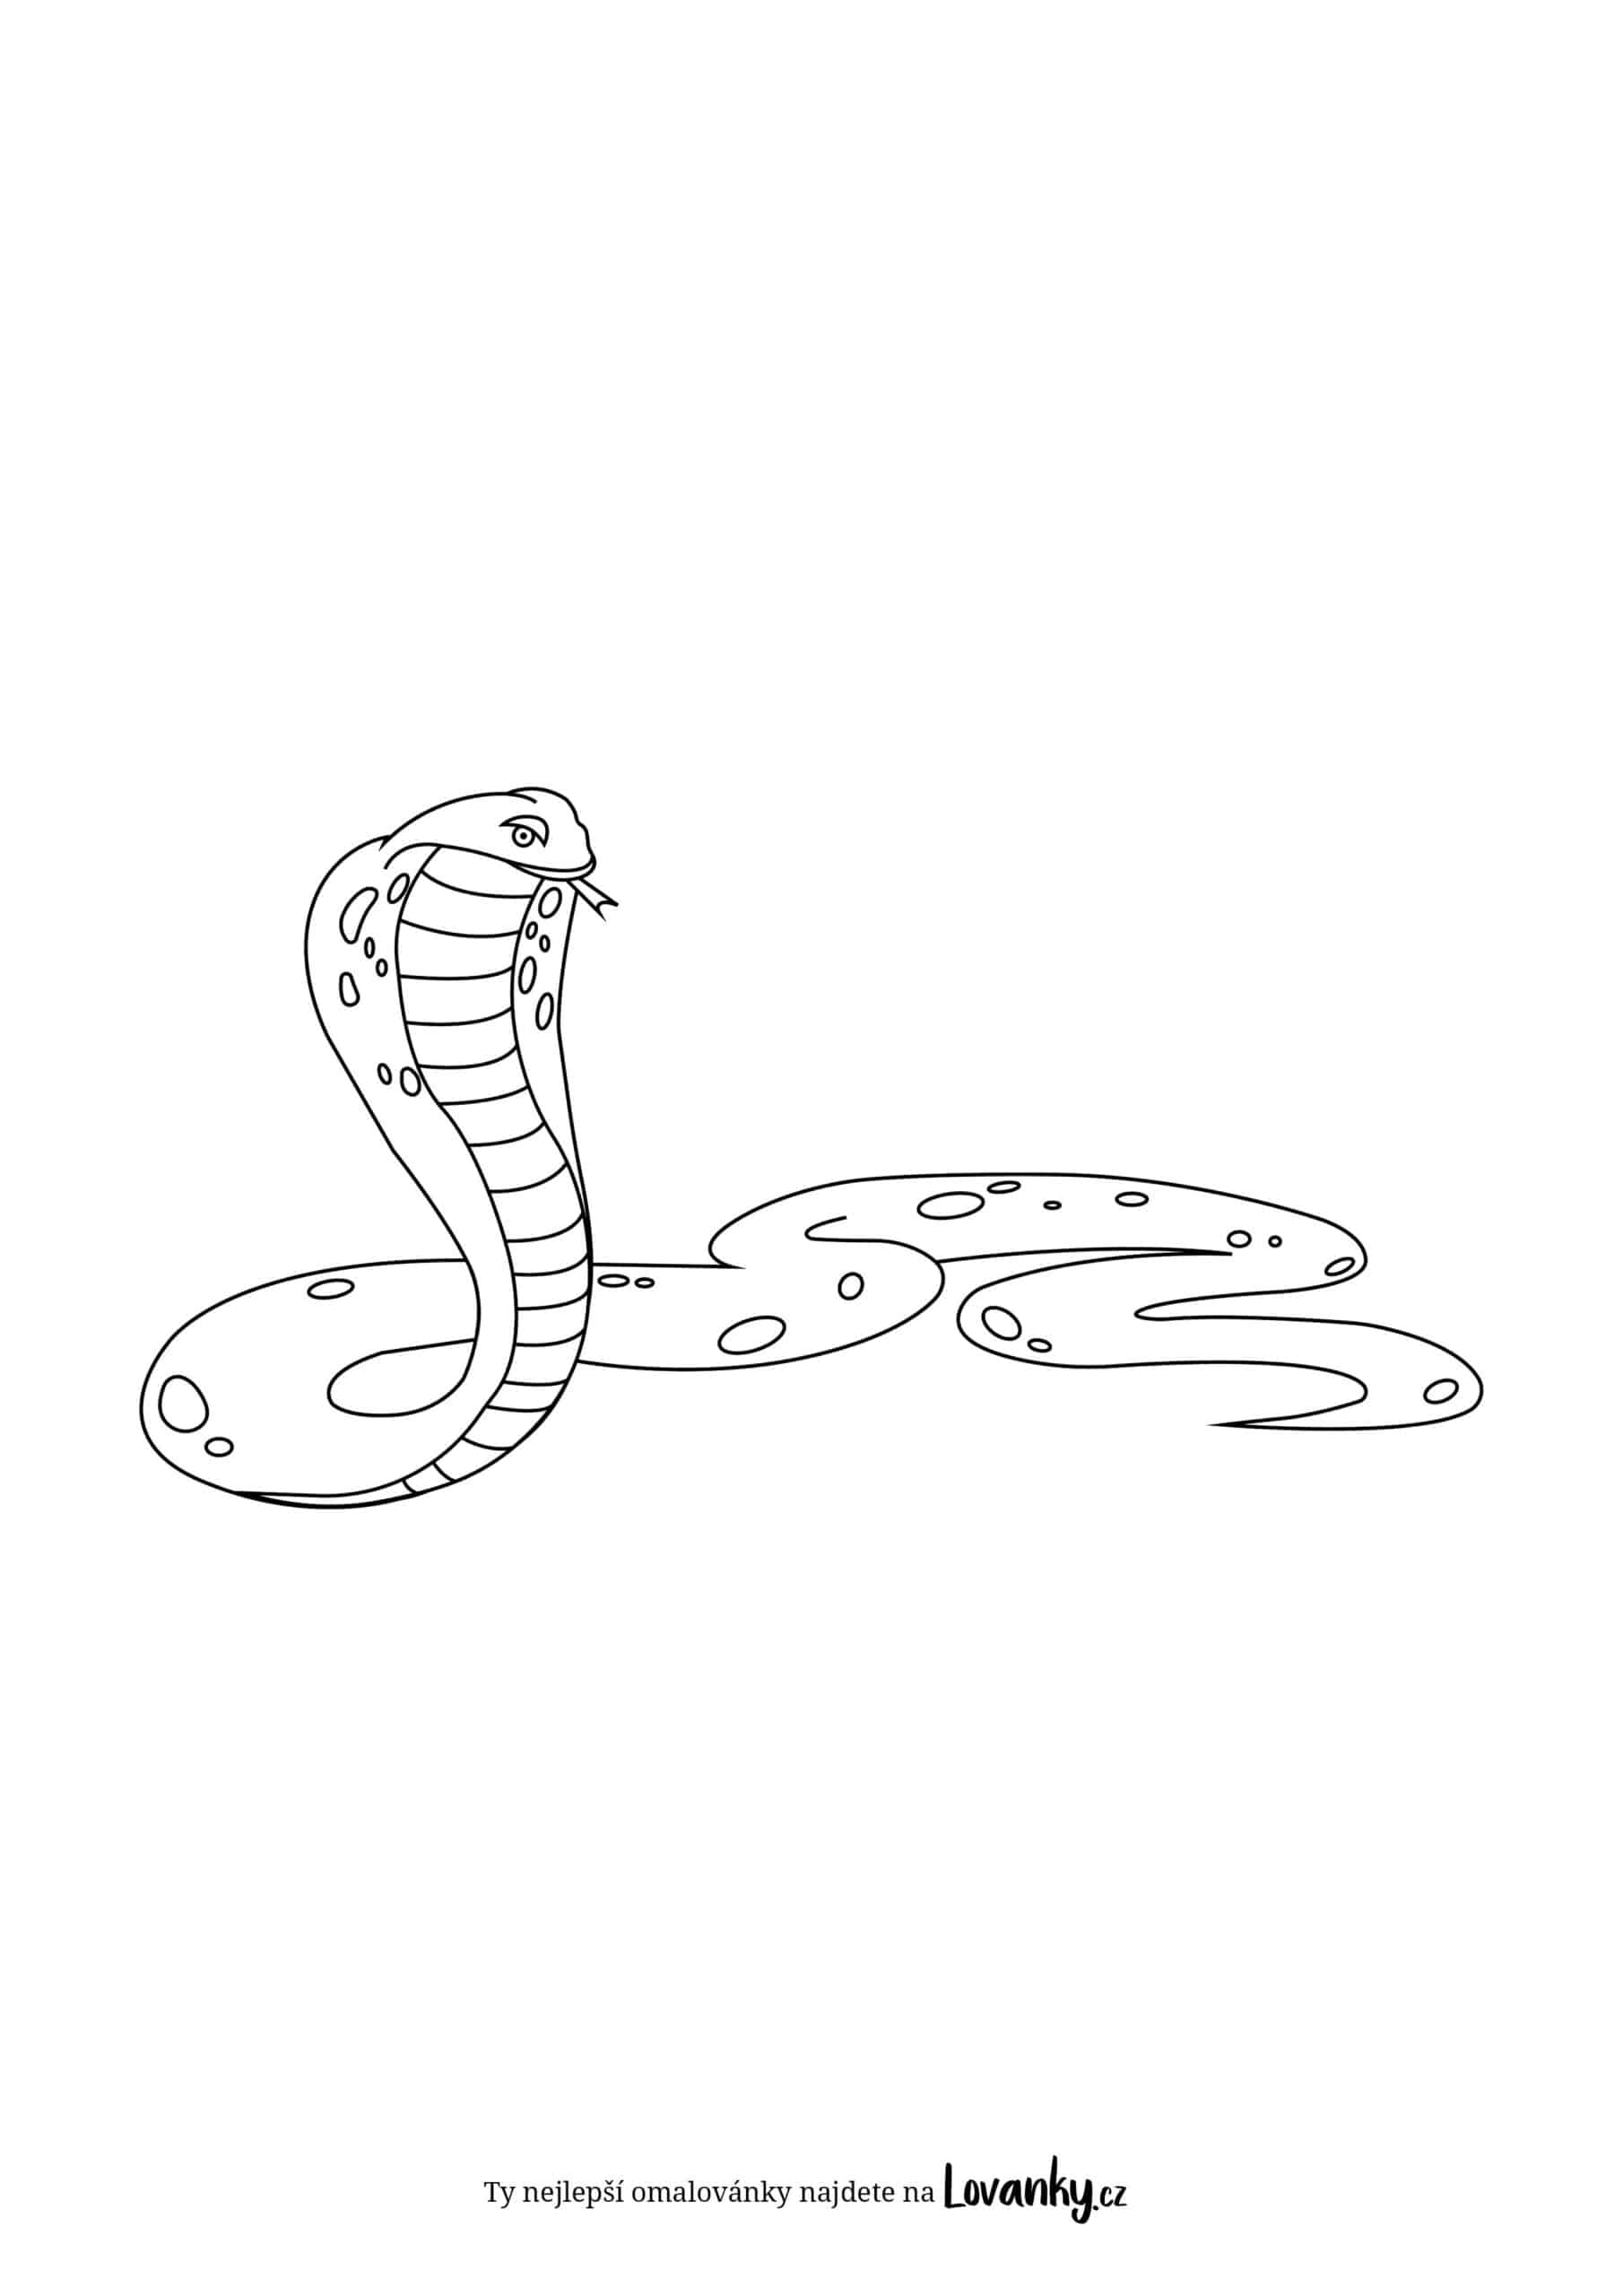 kobra omalovánky